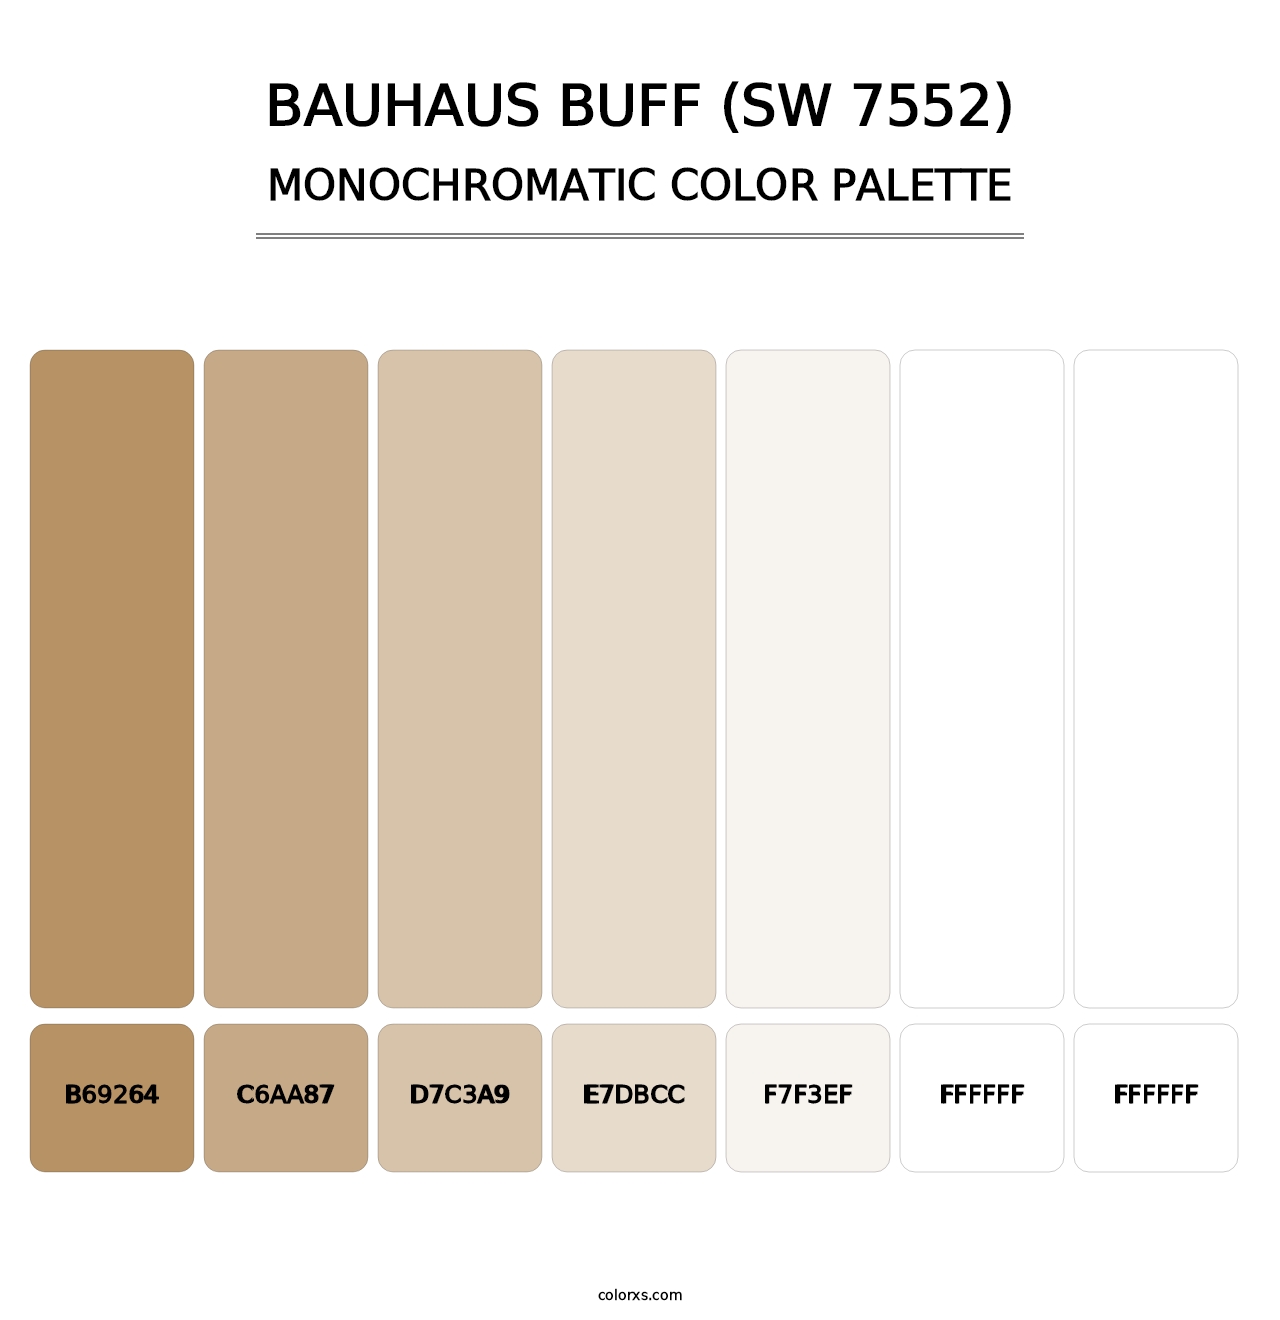 Bauhaus Buff (SW 7552) - Monochromatic Color Palette